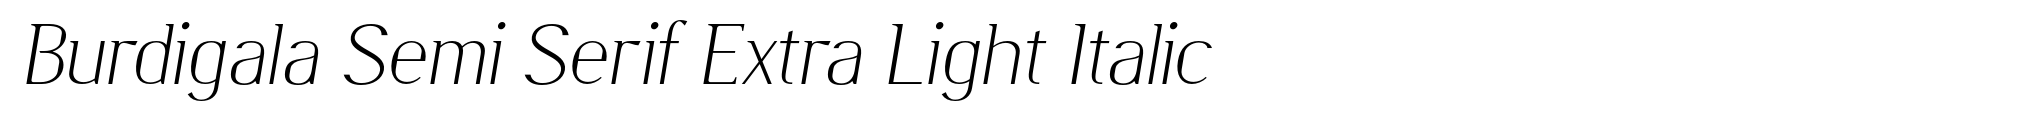 Burdigala Semi Serif Extra Light Italic image